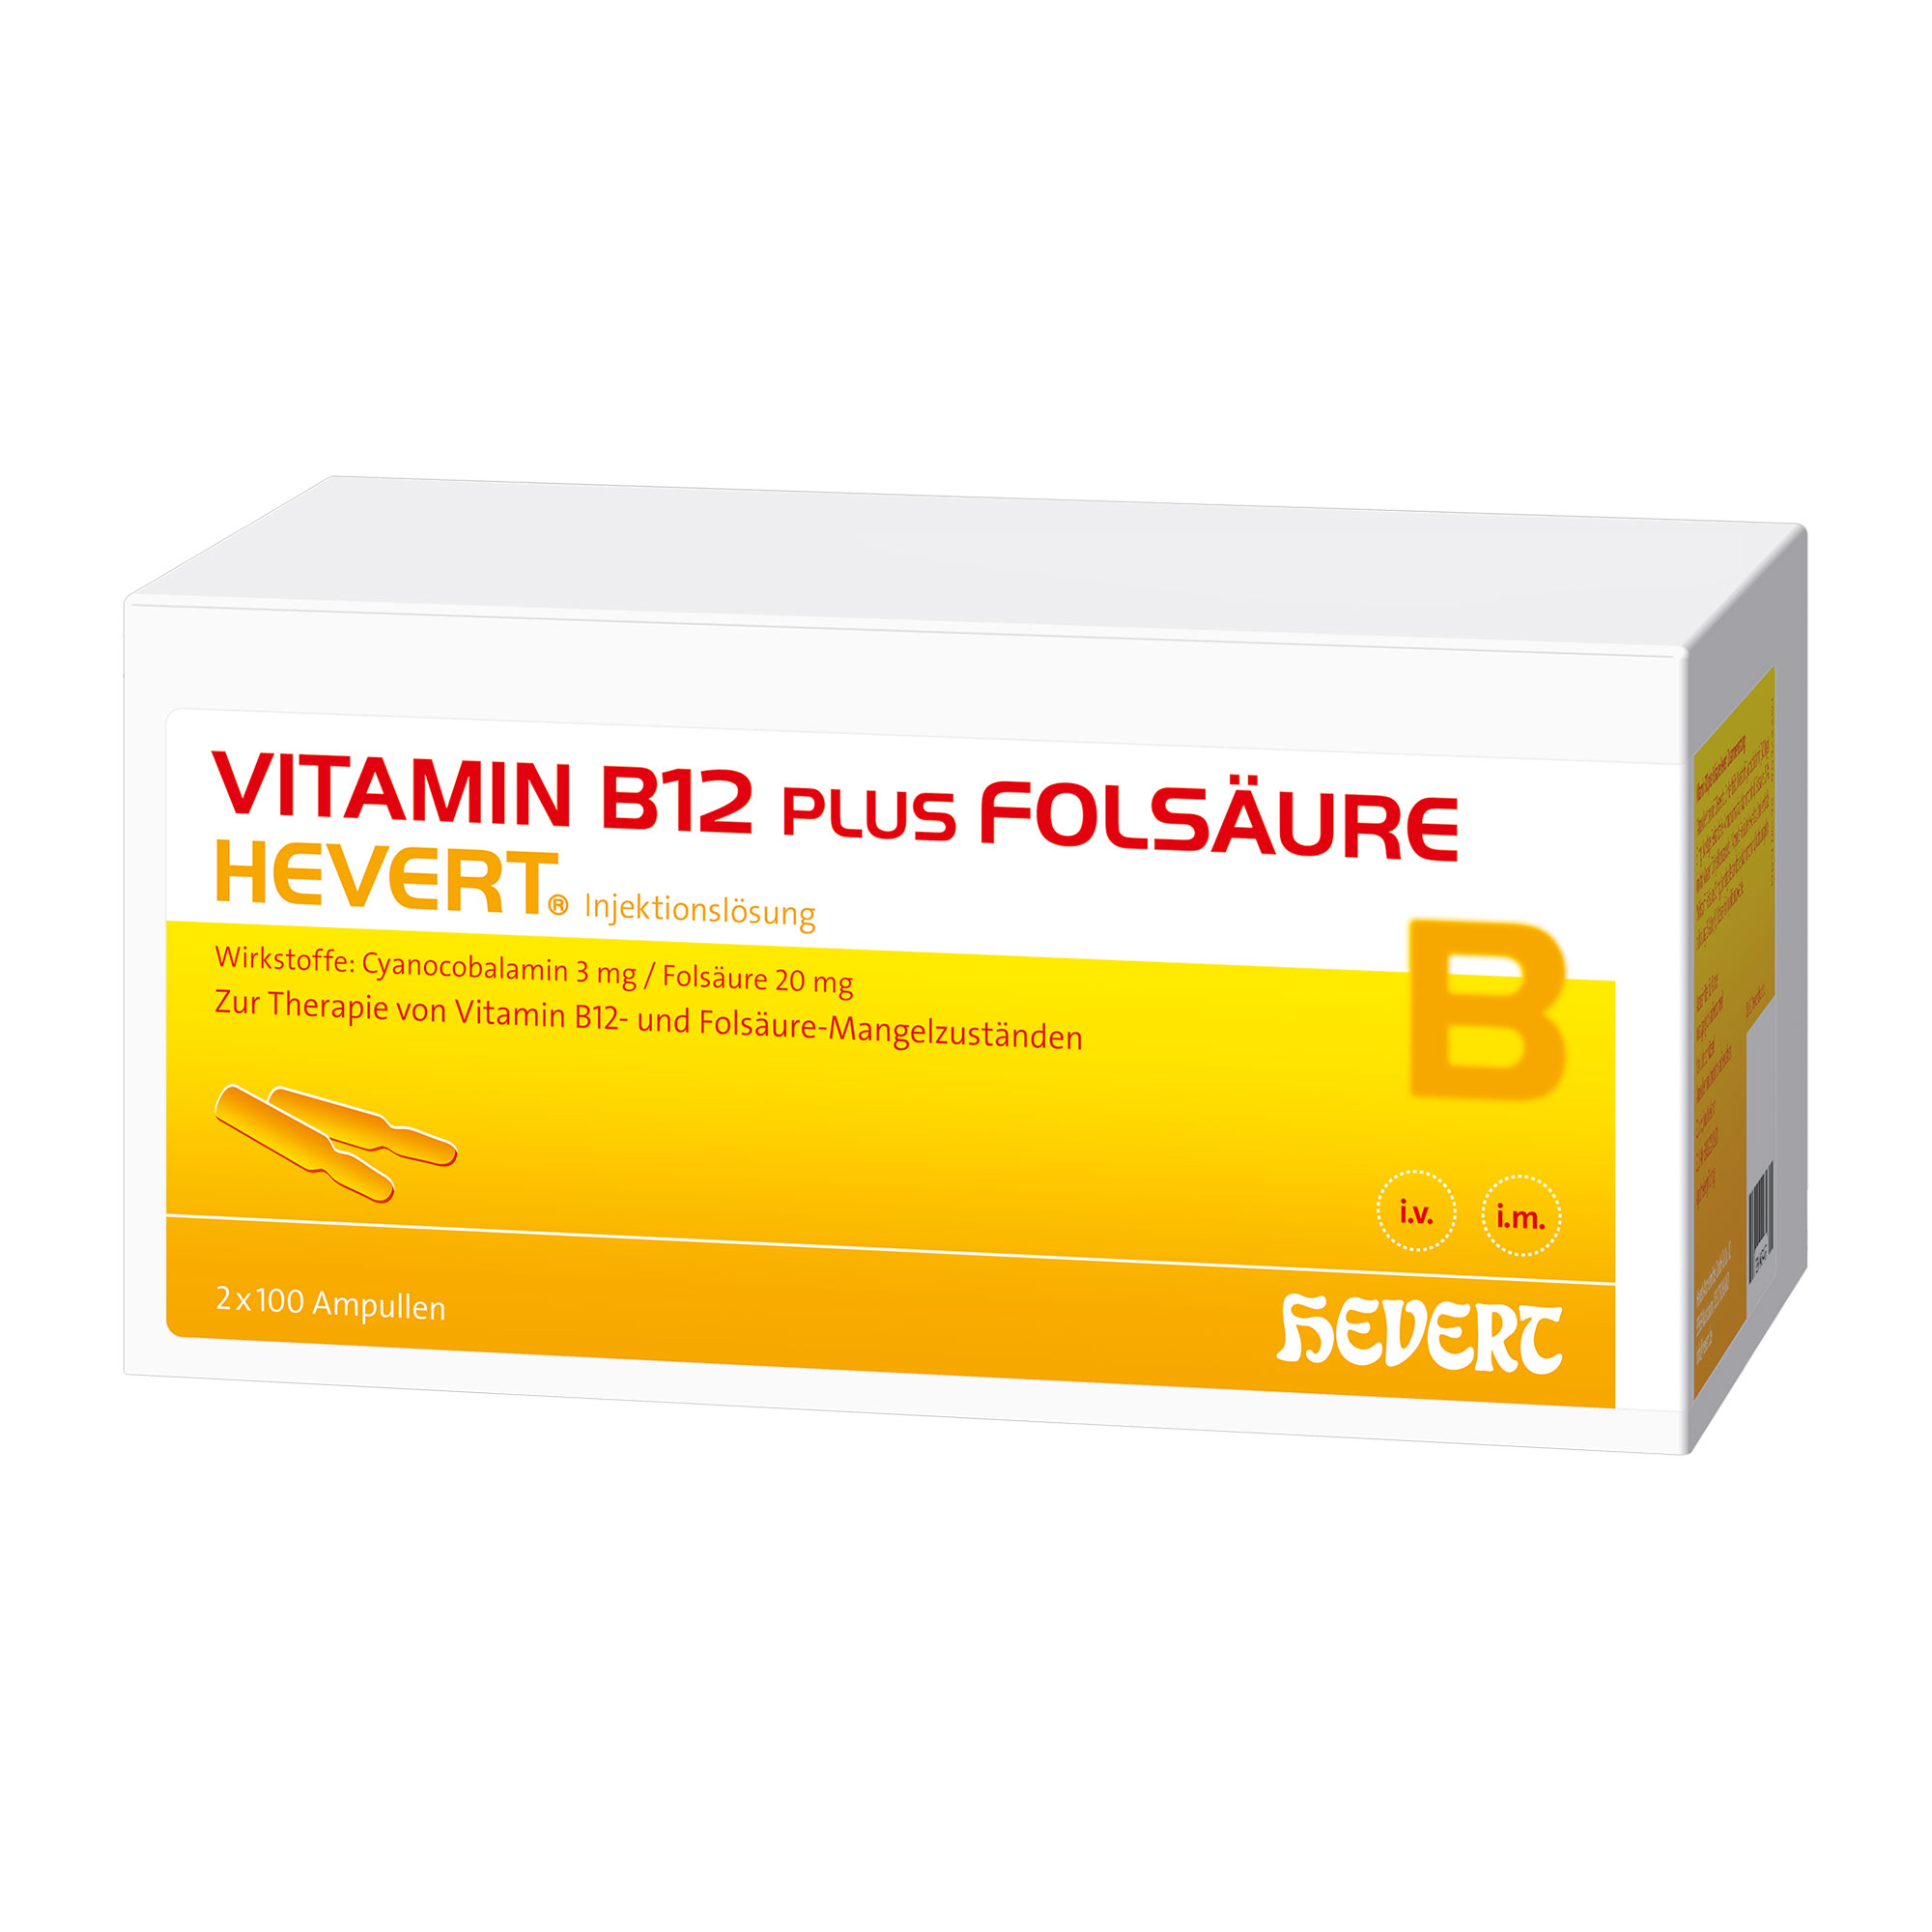 Vitaminpräparat als Injektionslösung. Zur Anwendung bei Folsäure- und Vitamin B12-Mangelzuständen.